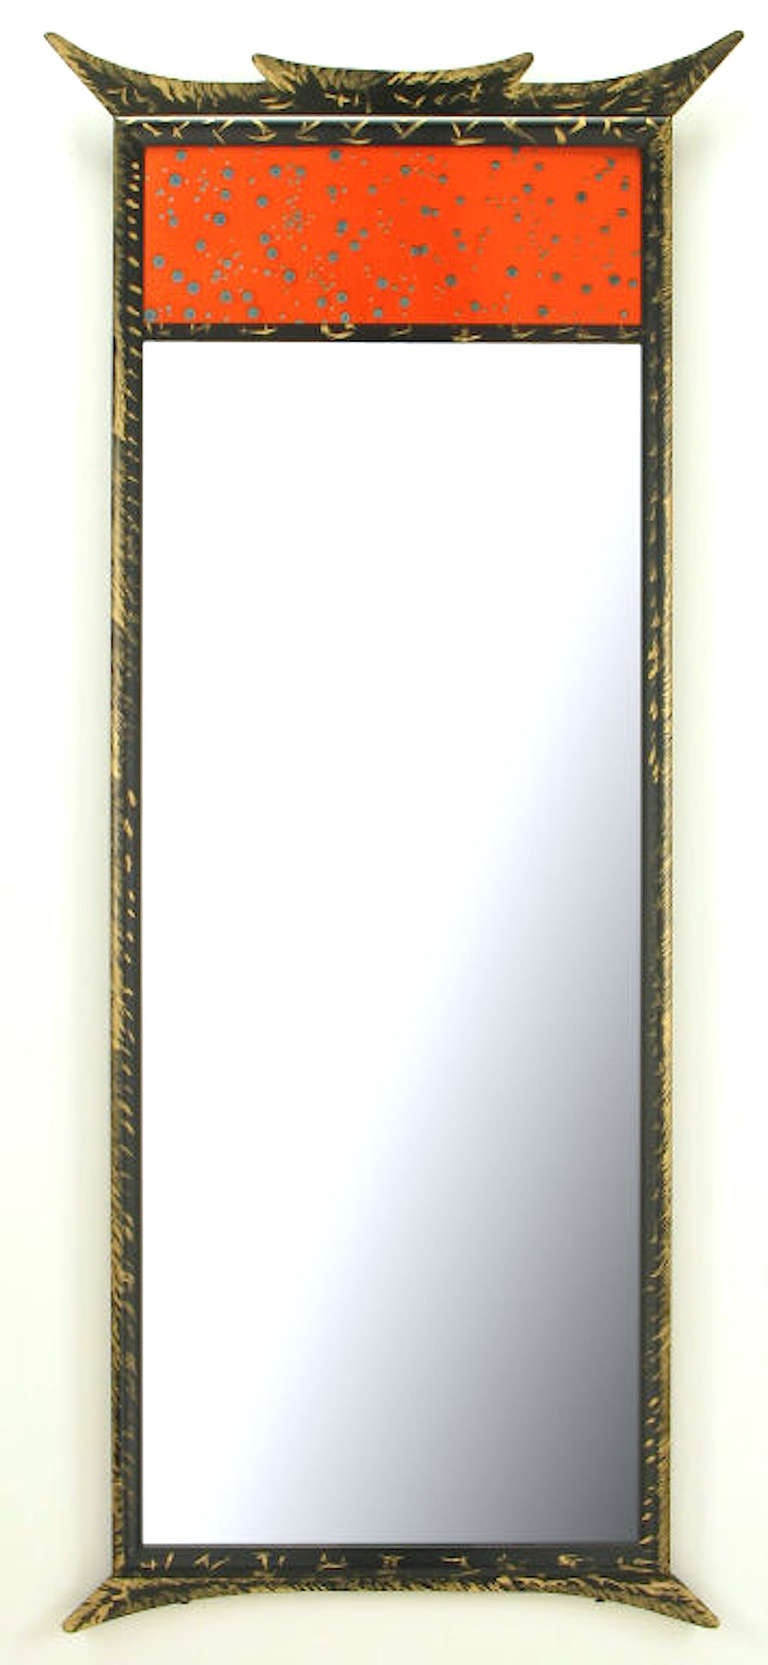 Paket vergoldet Pagode Stil emaillierte Platte trumeau Spiegel.